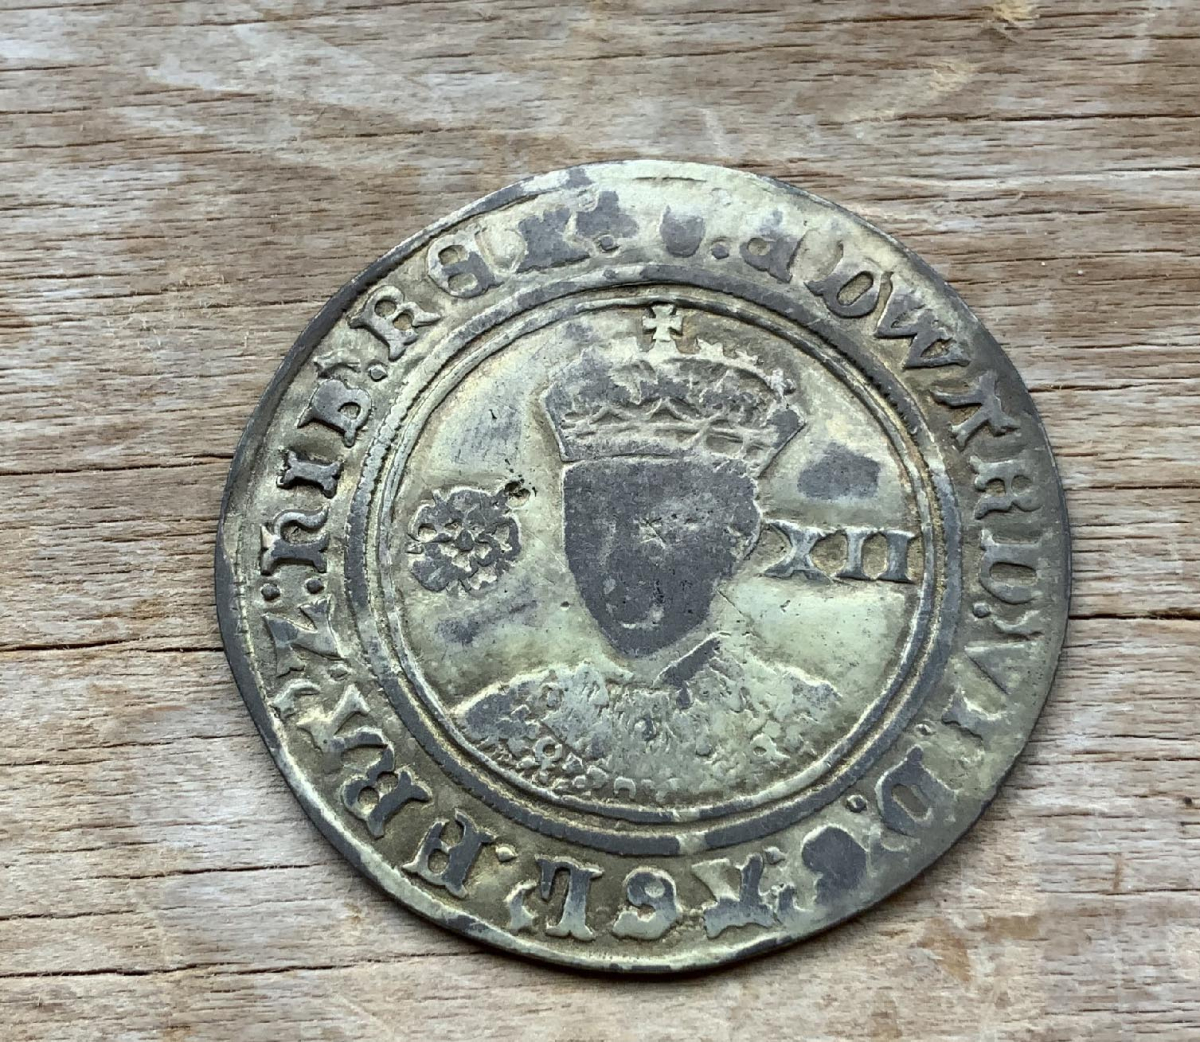 Rare 1551-1553 Edward VI of England Shilling coin C338